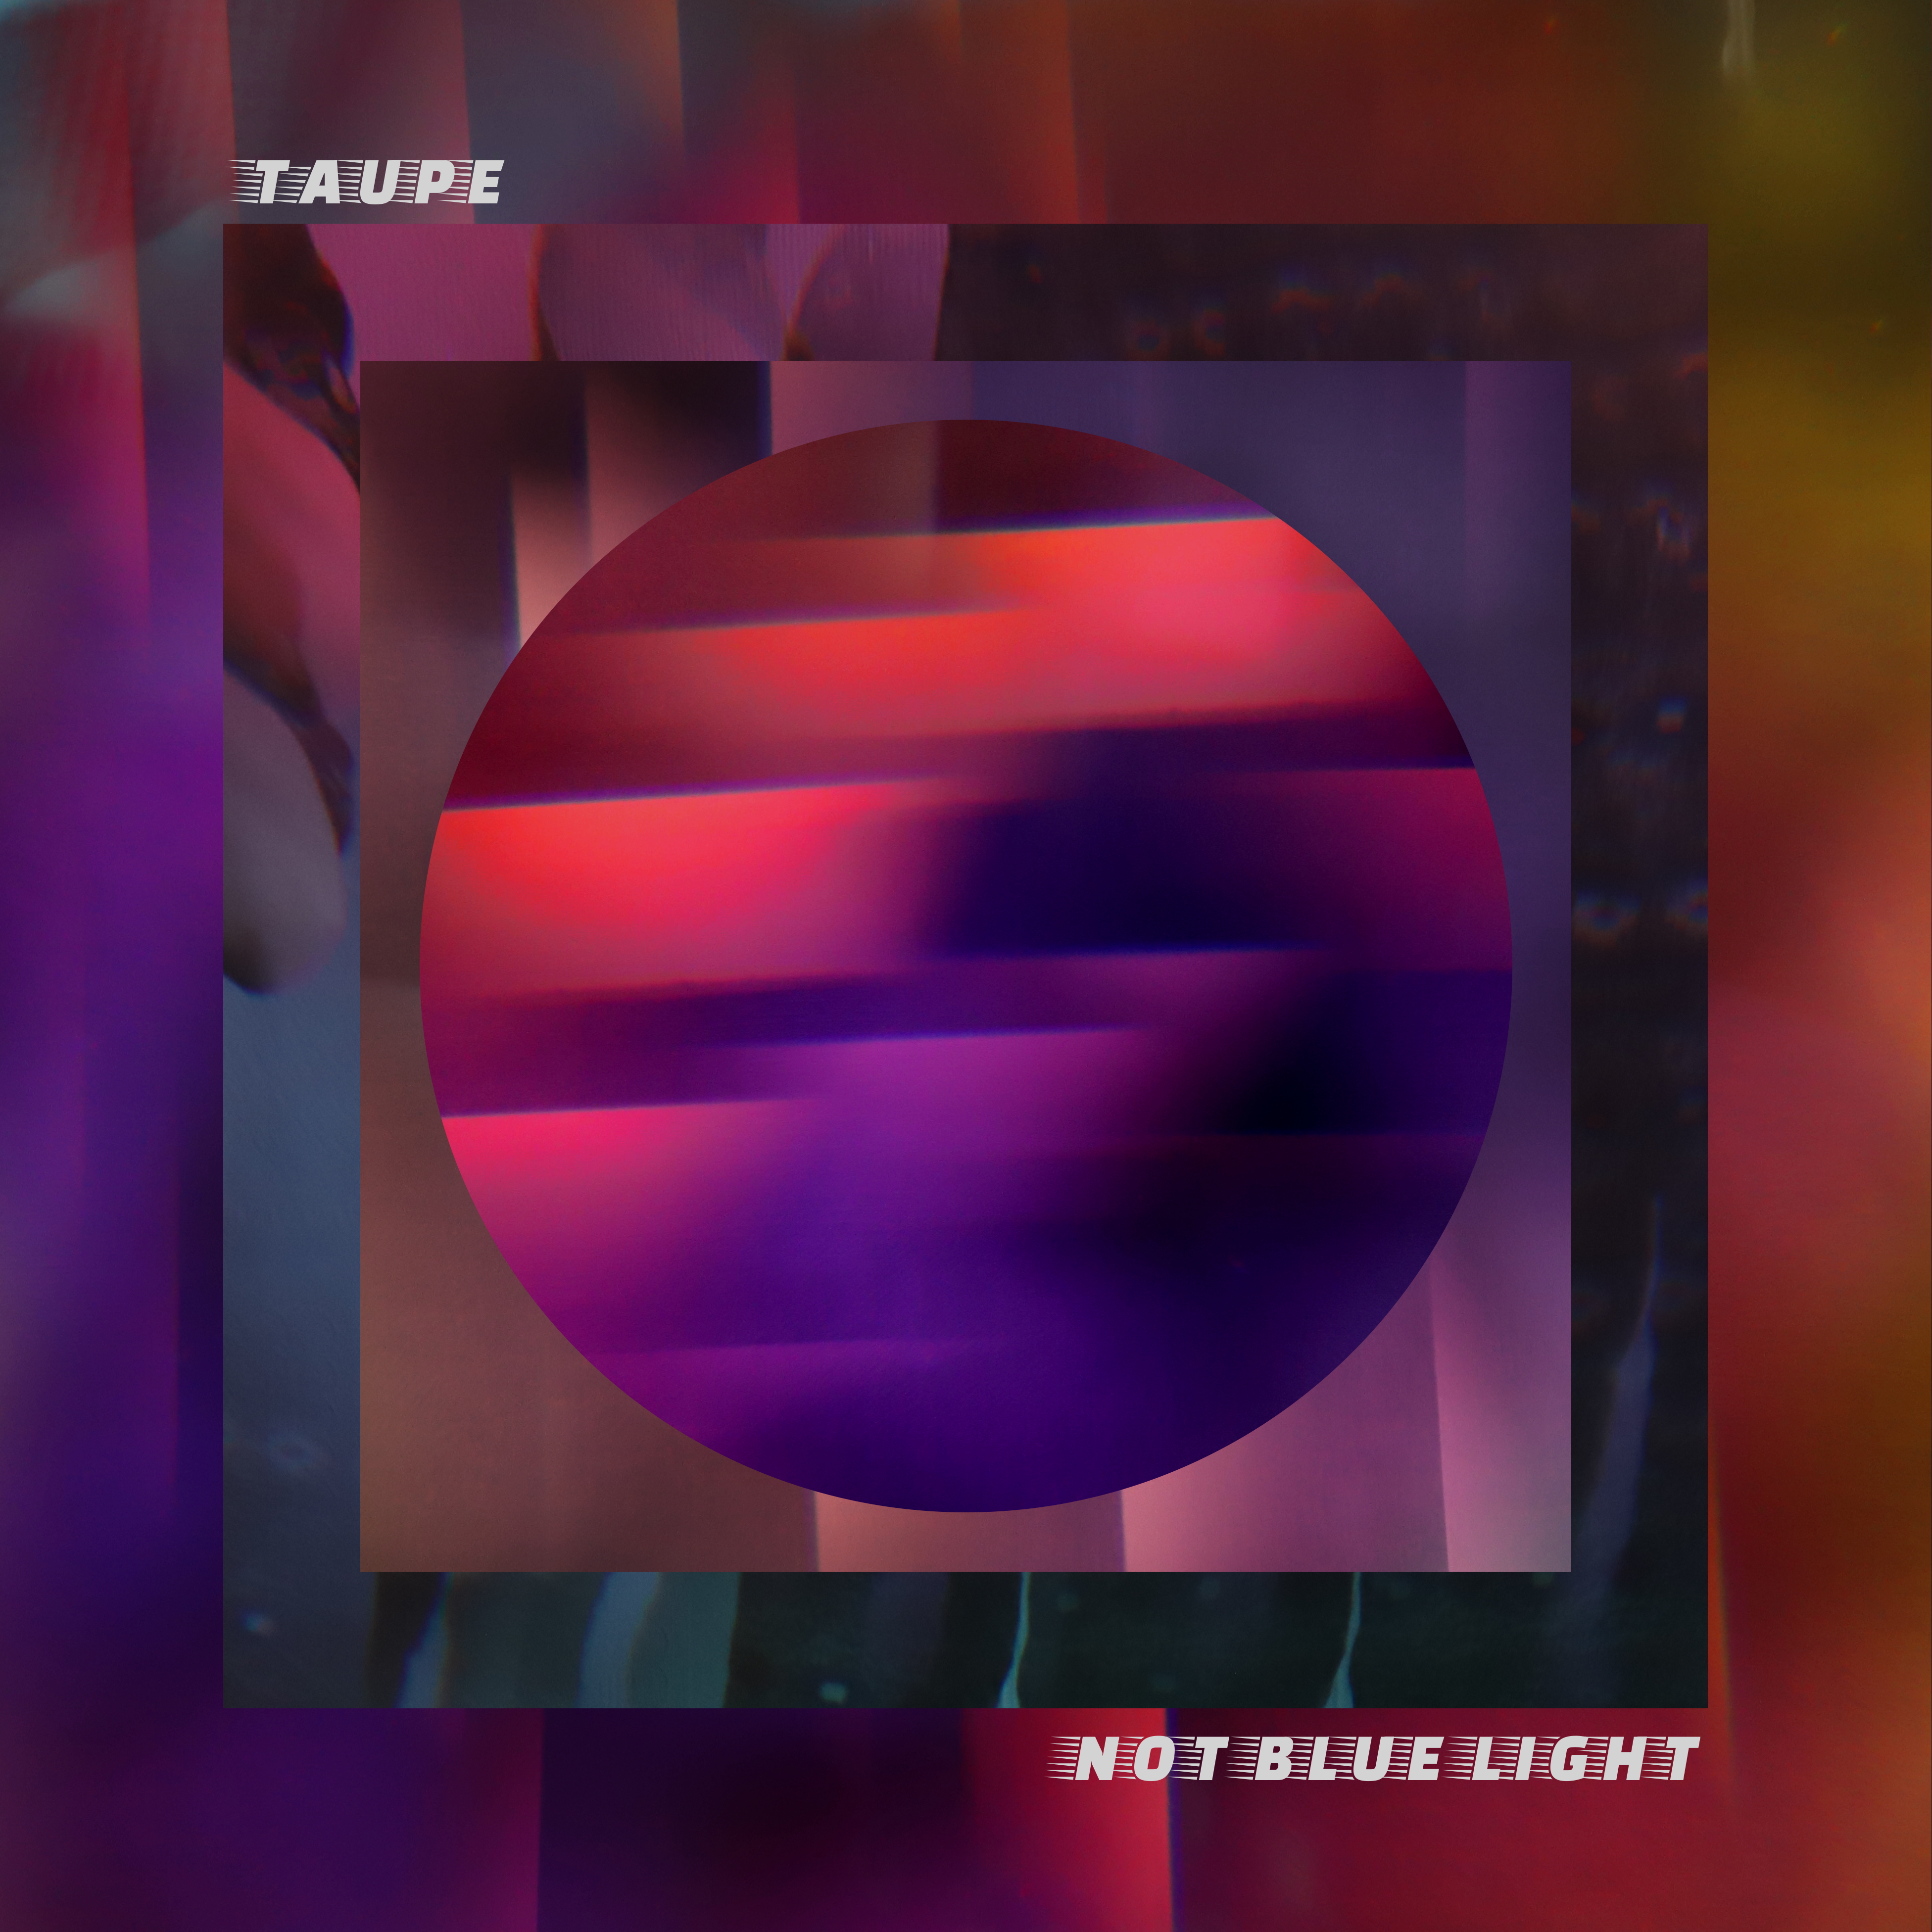 The cover artwork for Not Blue Light